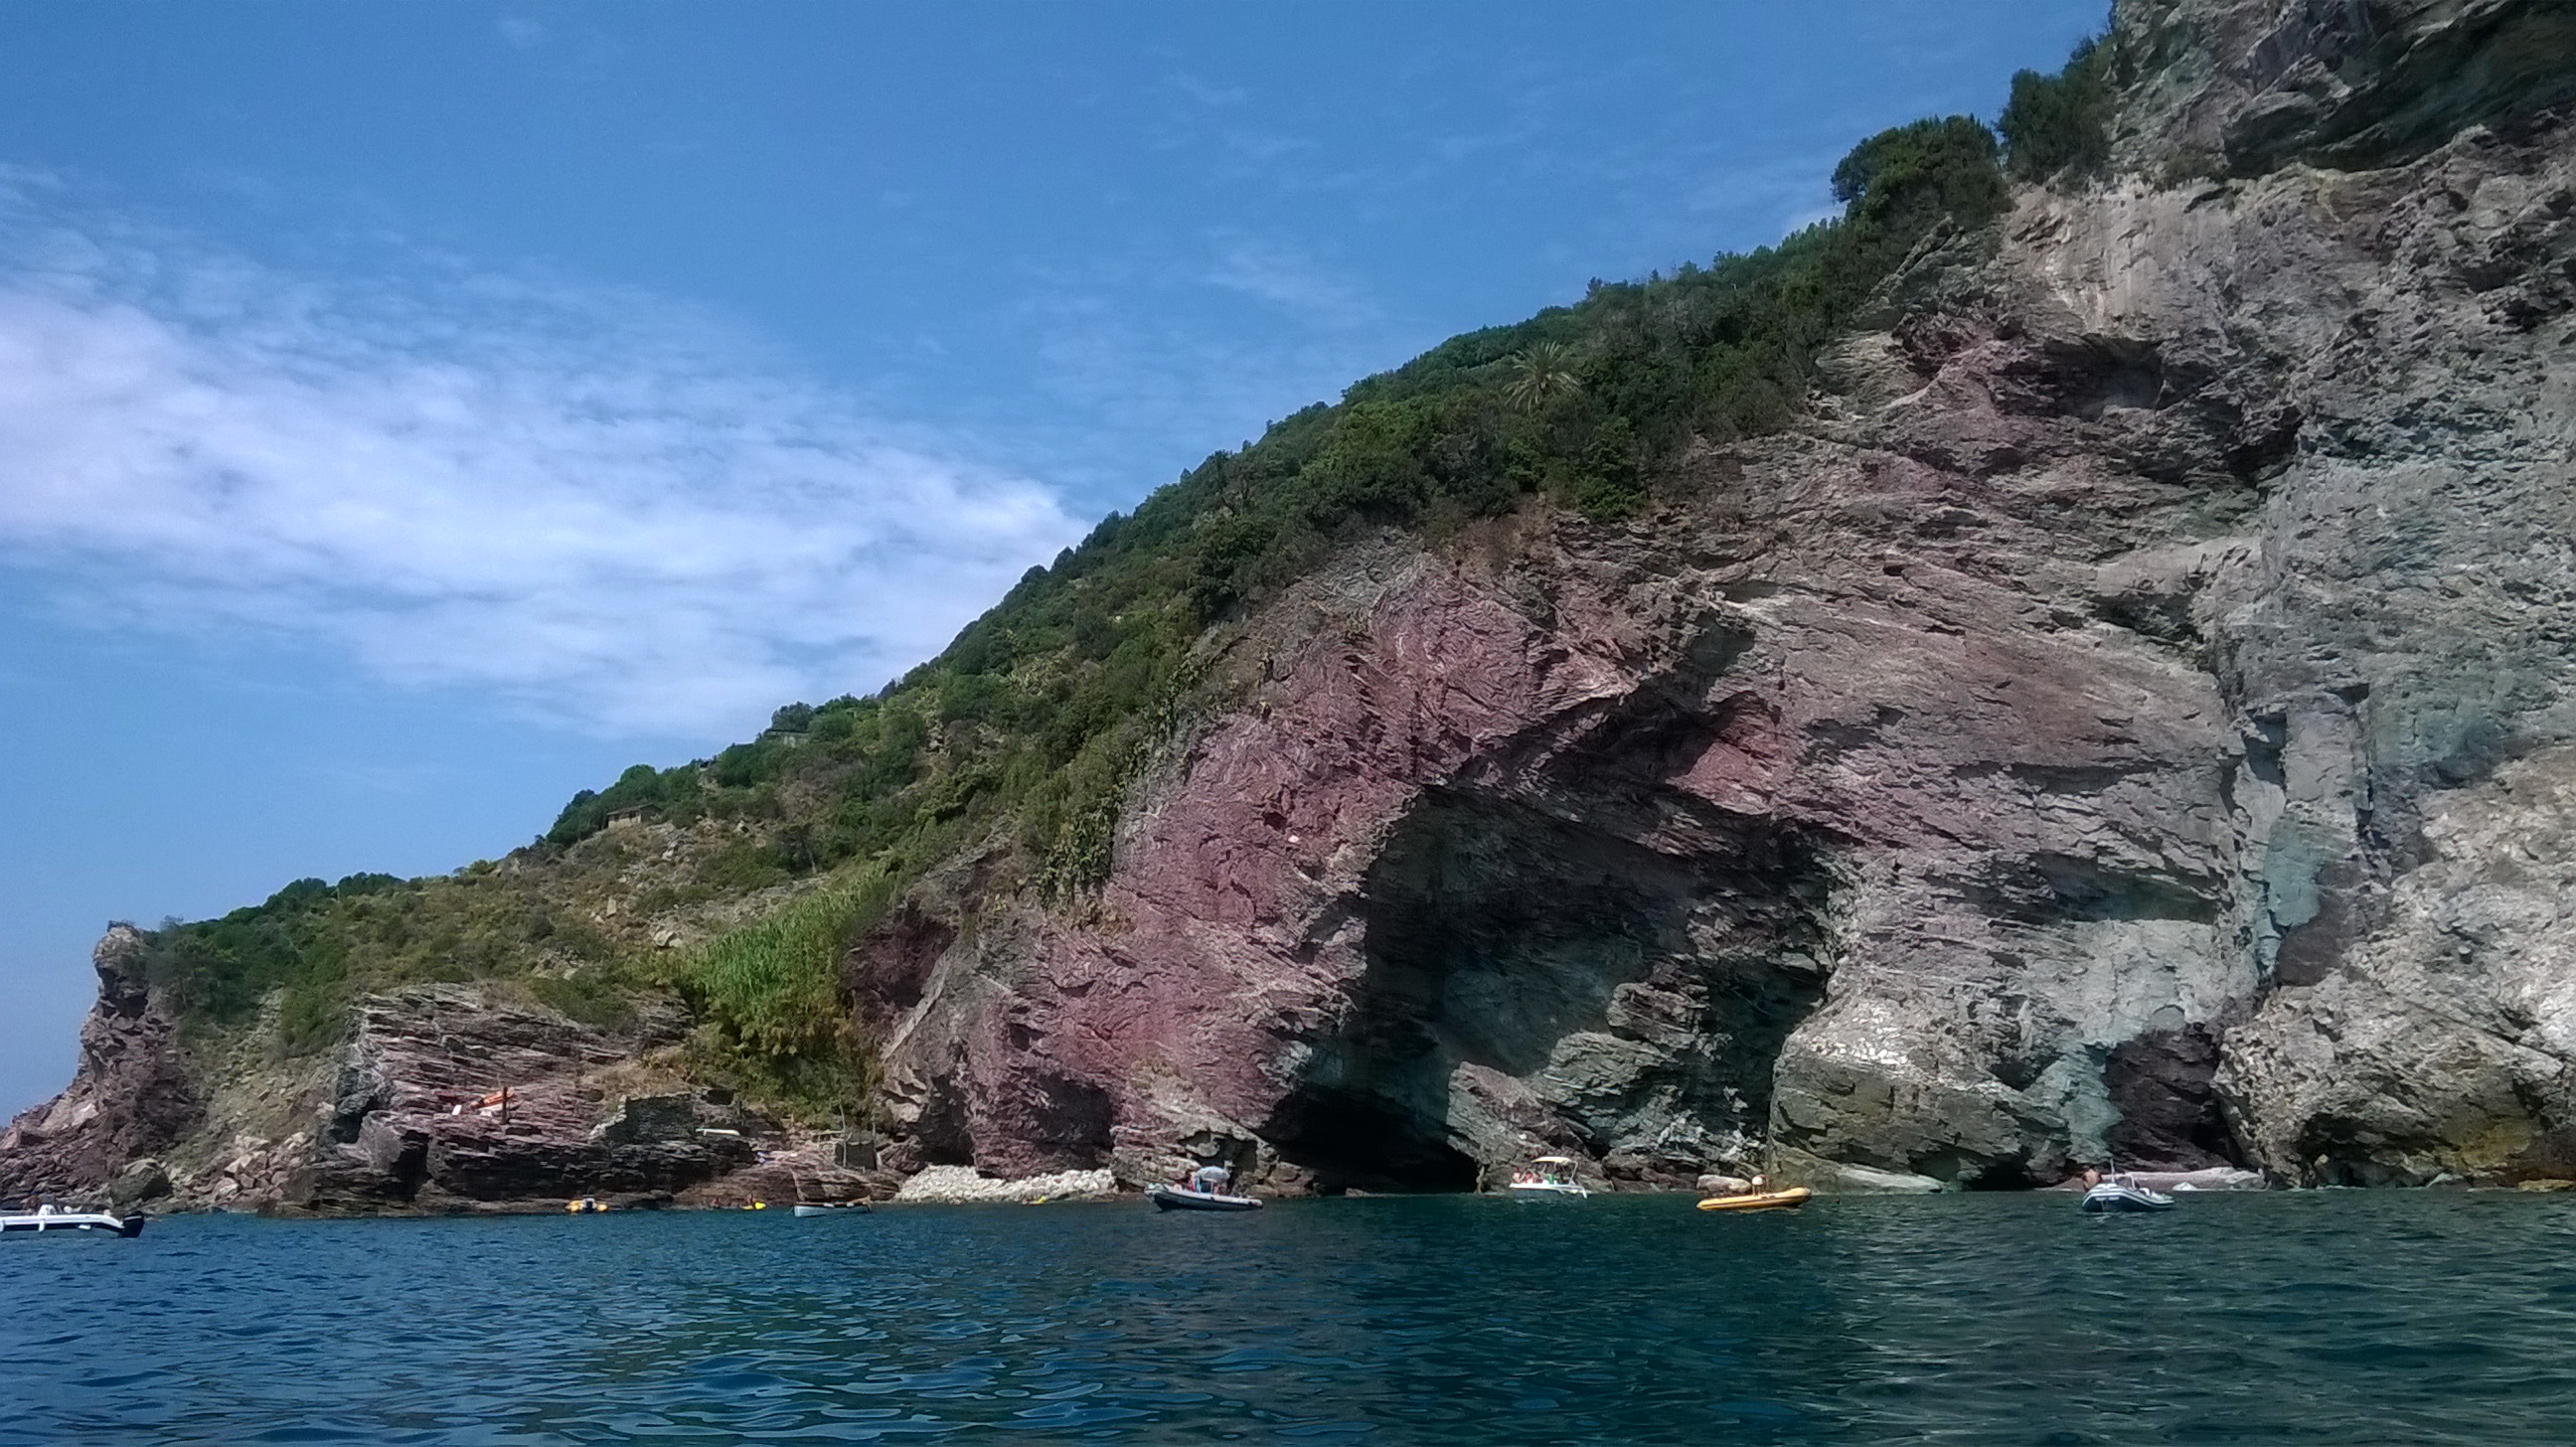 Questa parte di costa si trova dopo Portovenere in direzione Riomaggiore. Qui l'acqua cristallina permette di godersi anche i fondali se vi piace fare snorkeling. Il nome della località è dovuto all'evidente colorazione delle rocce